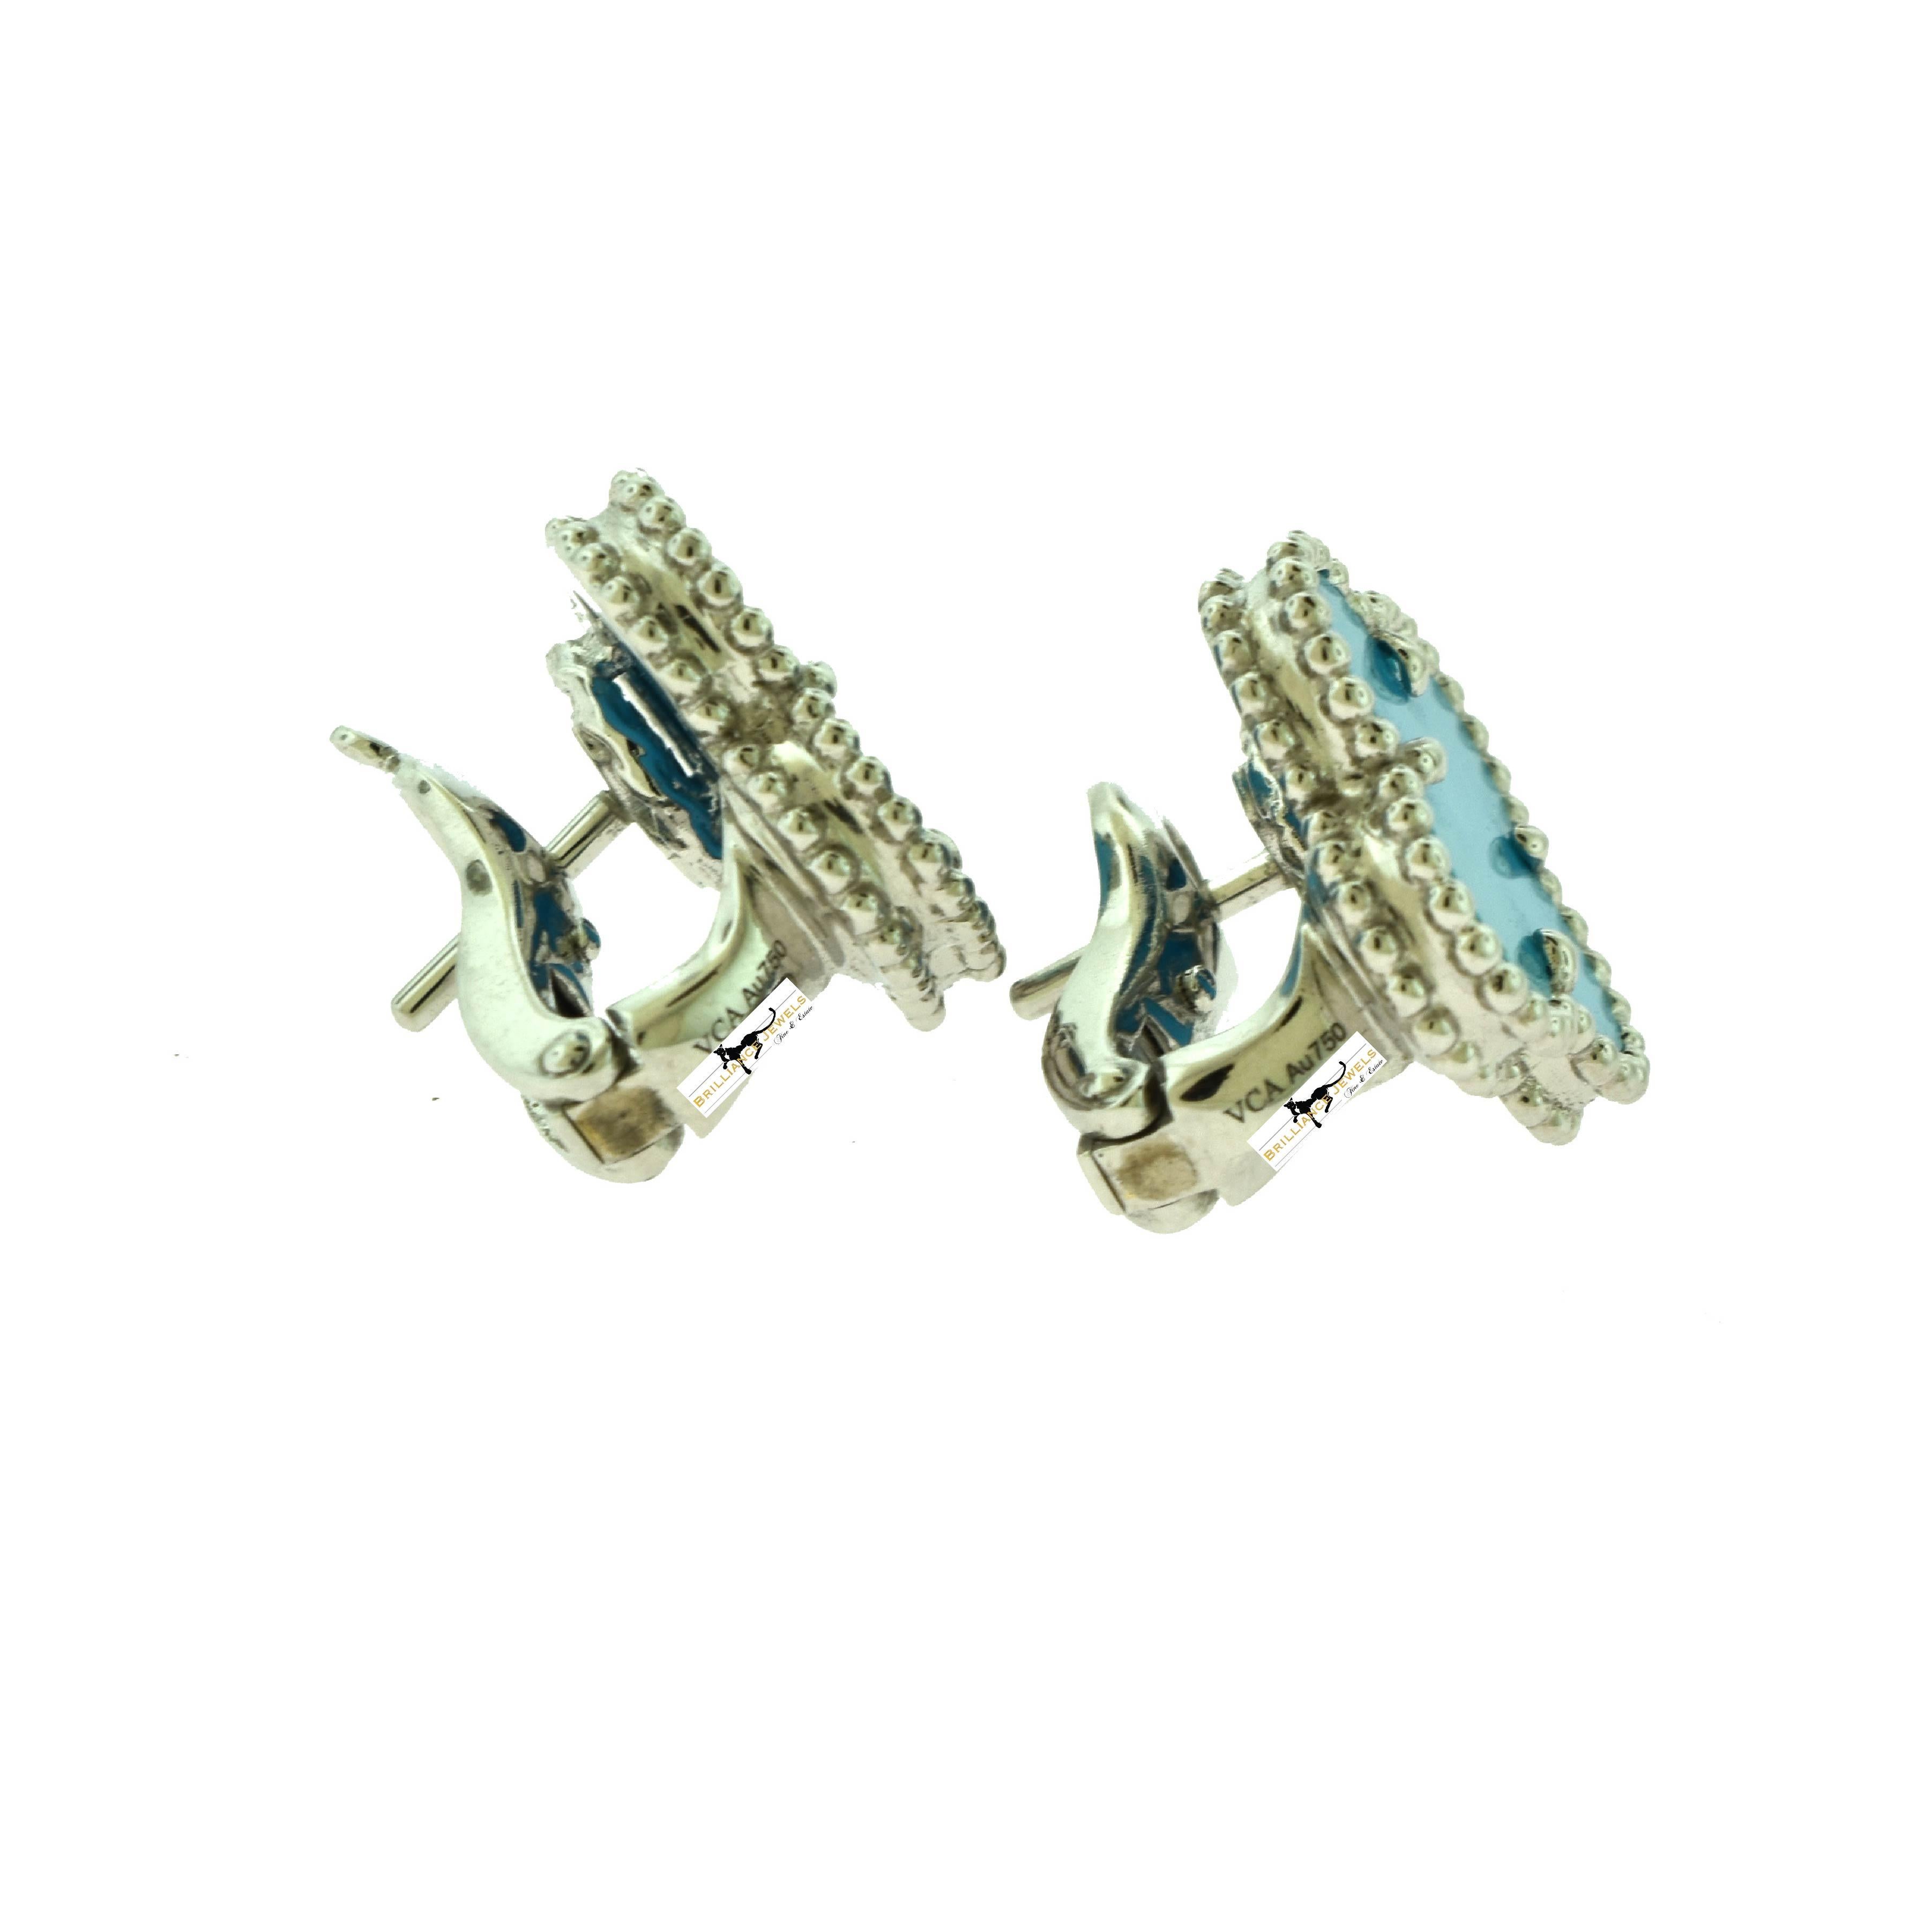 15mm vca earrings when worn